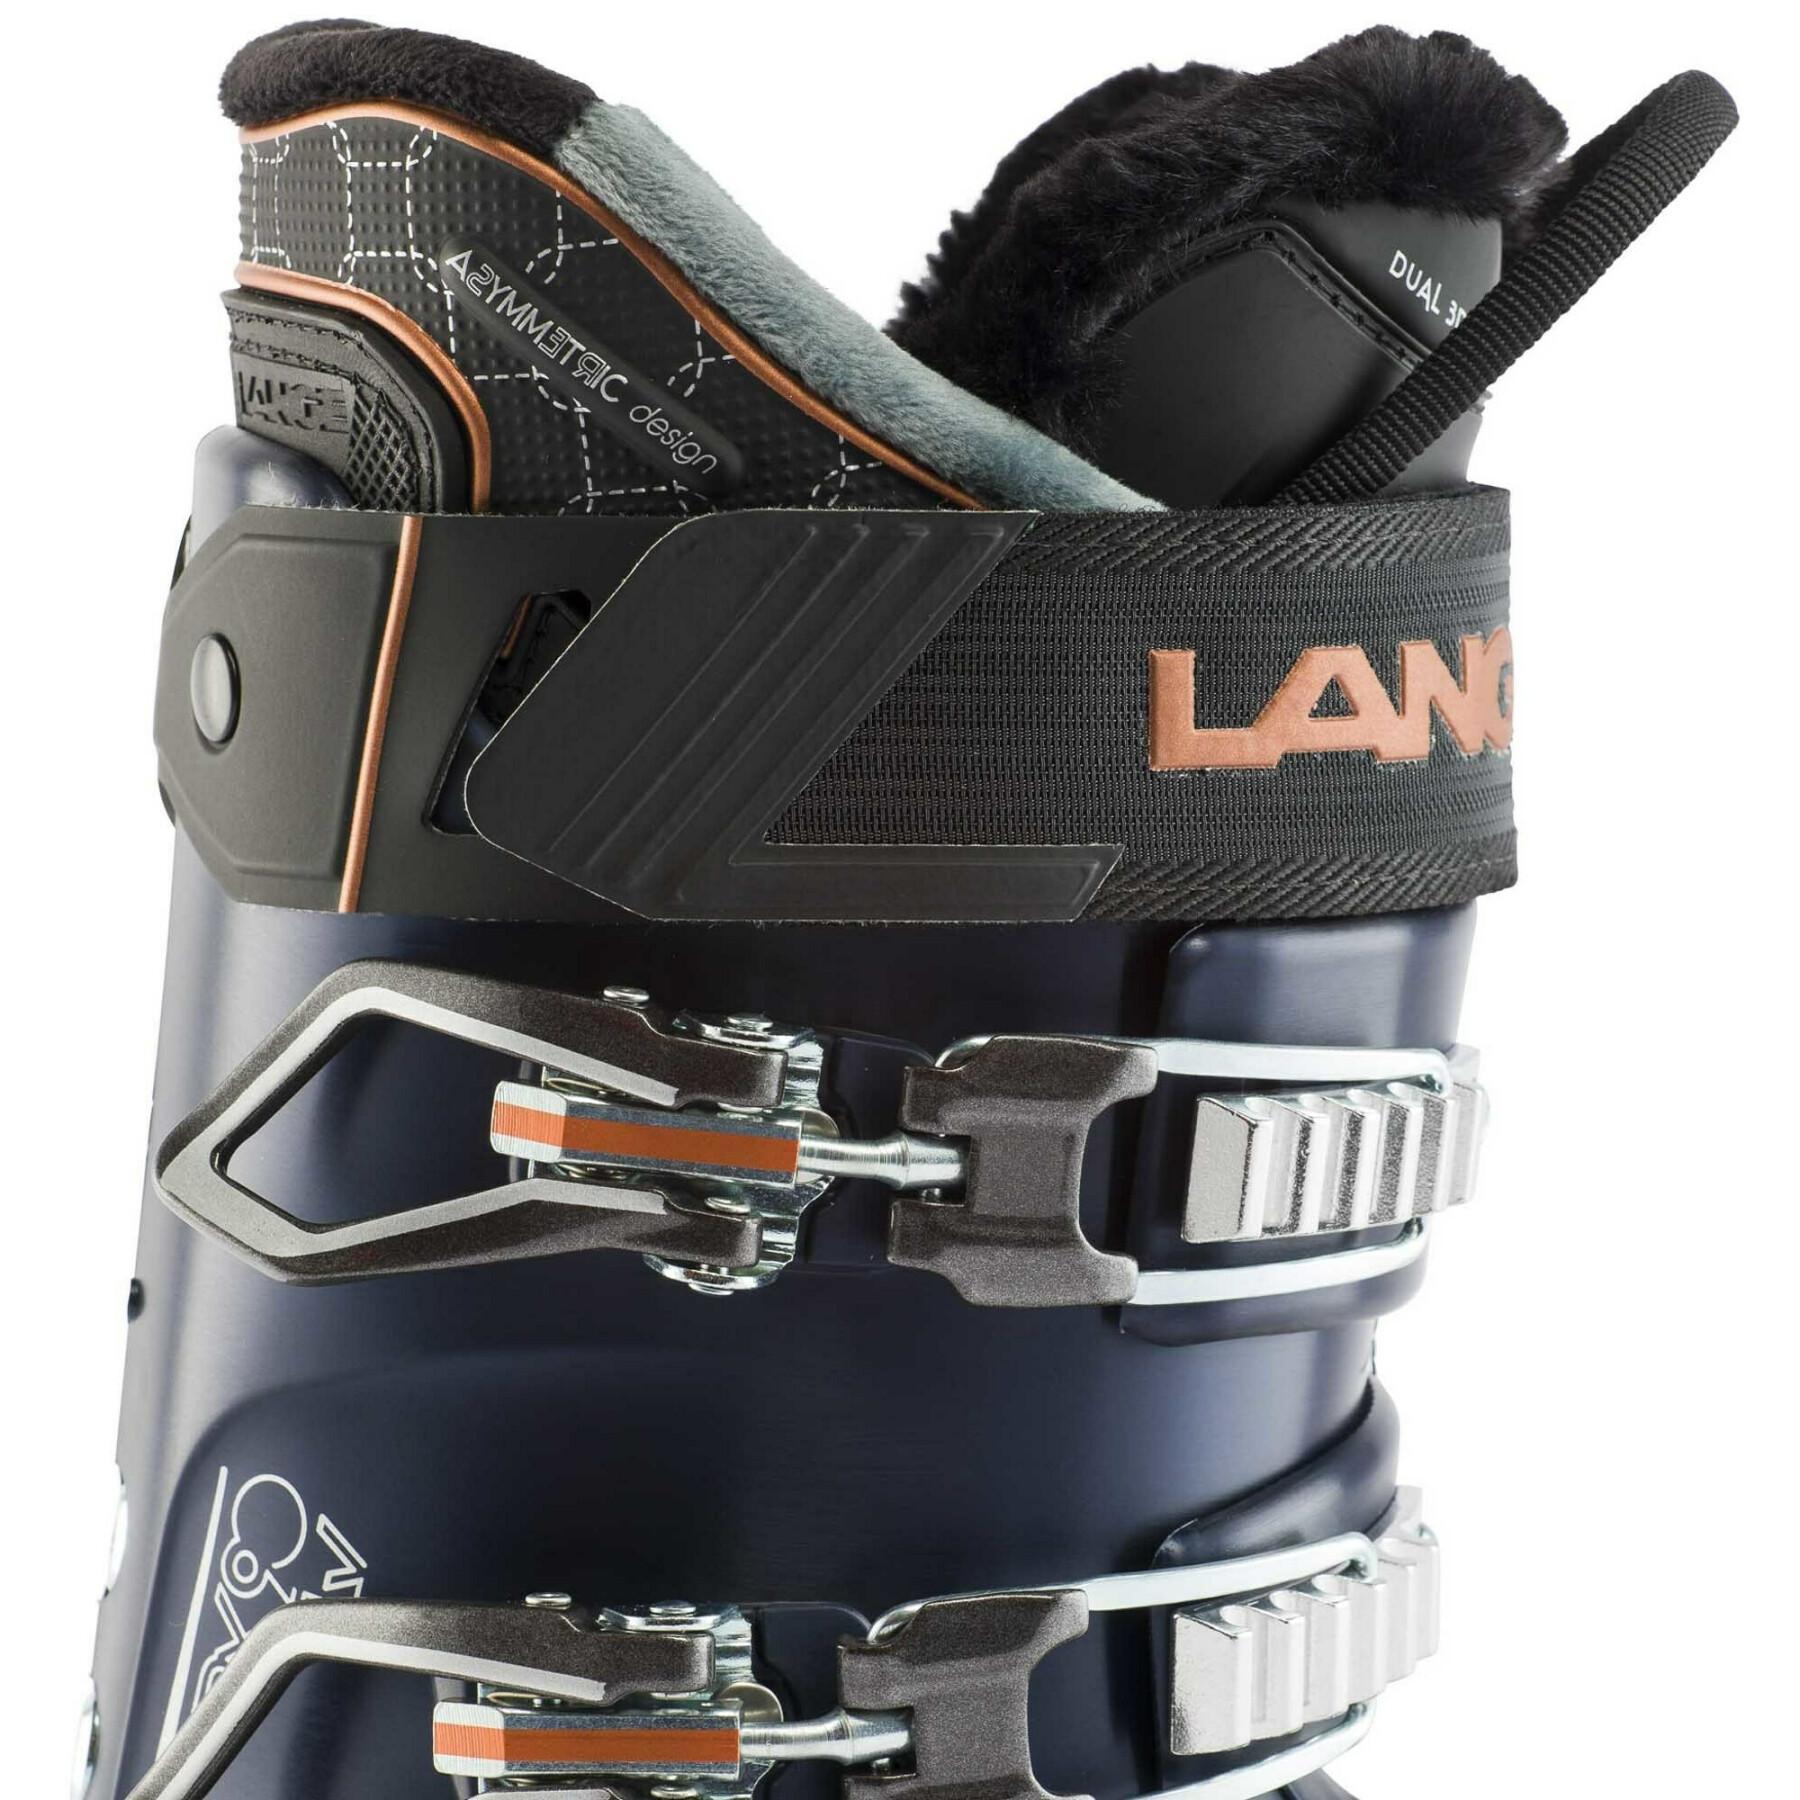 Chaussures de ski femme Lange Rx 90 W Lv Gw